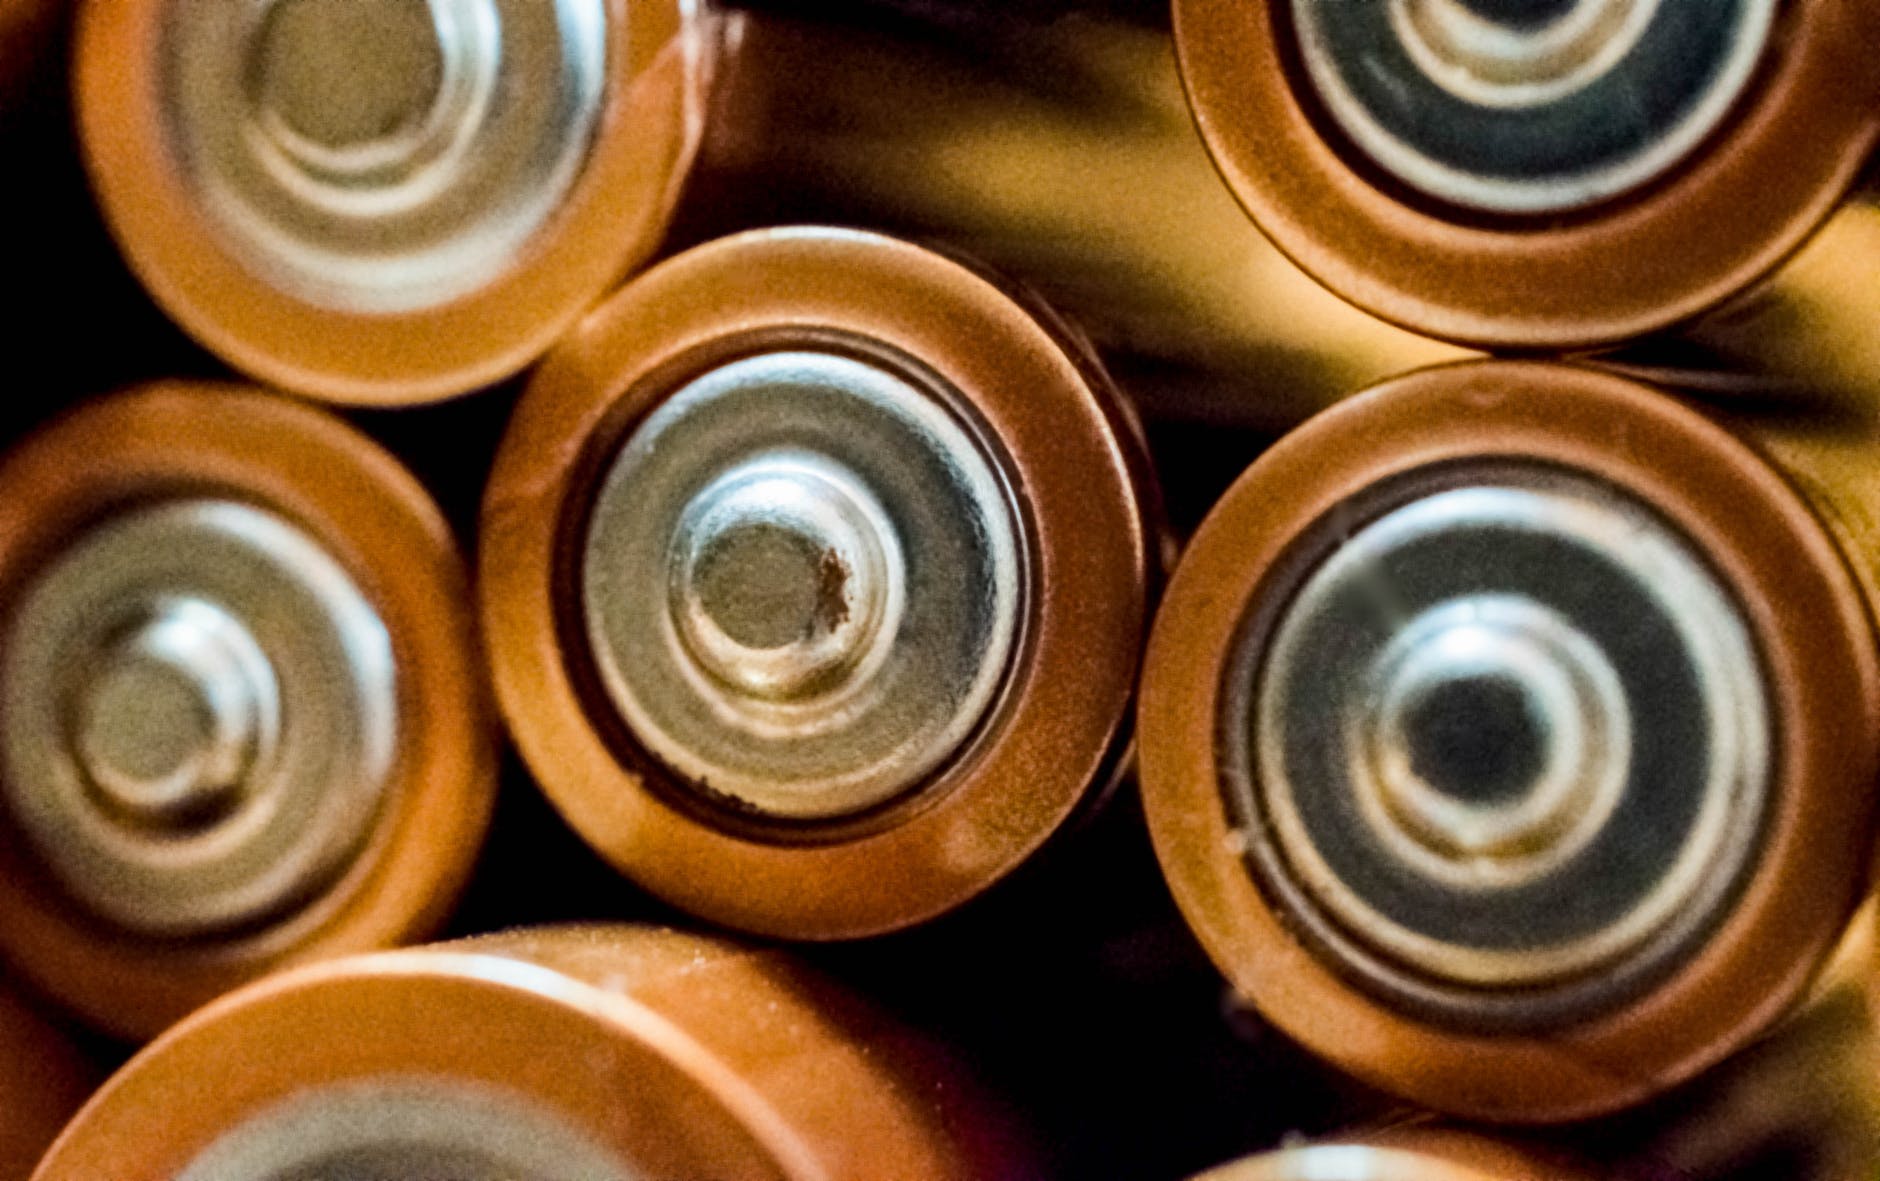 Disposable Batteries